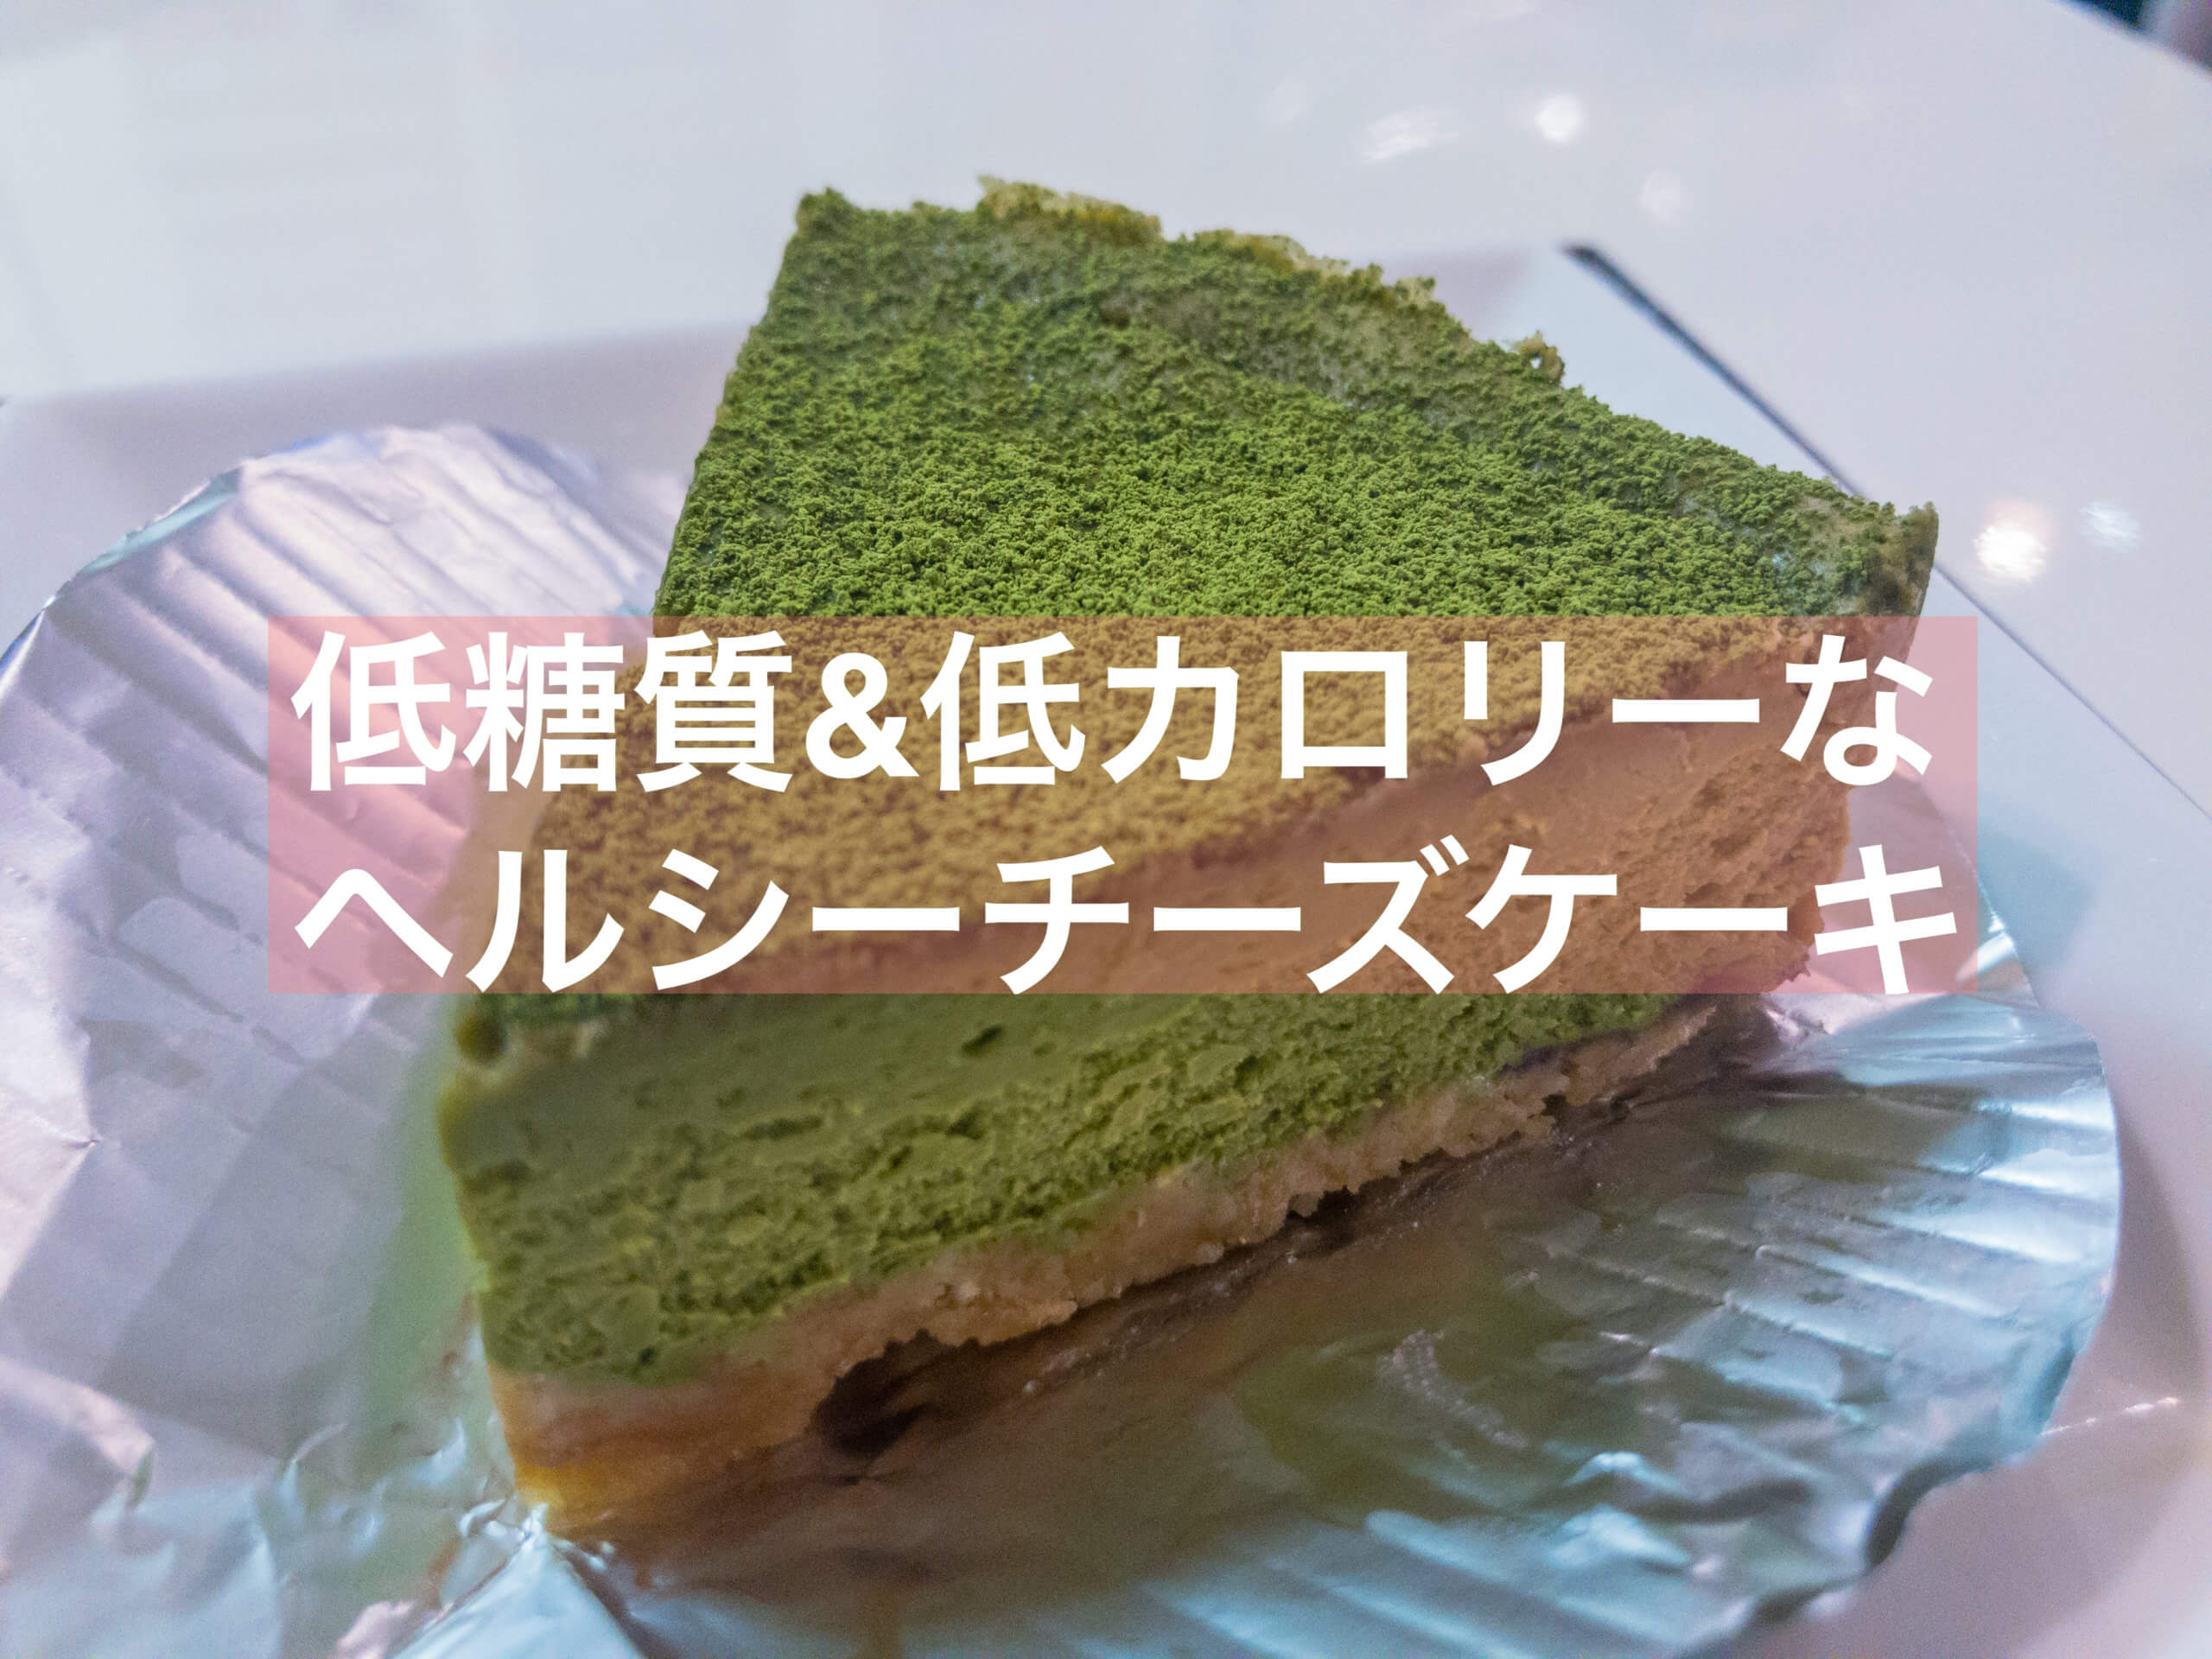 抹茶 エニシダで舌もカラダも喜ぶ低糖質チーズケーキを 東京 抹茶スイーツの魅力を発信するブログ Matcha